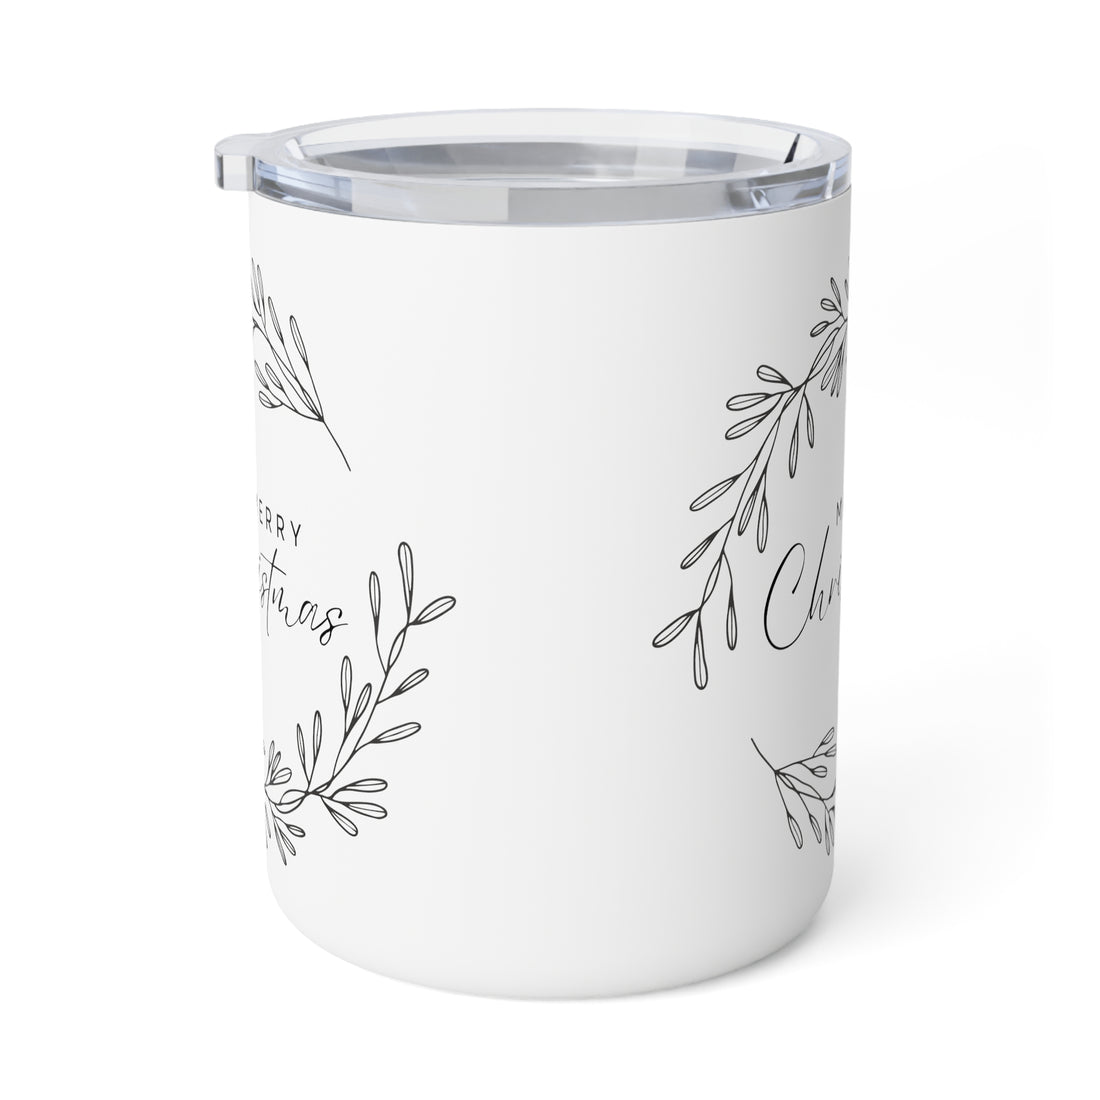 Merry Christmas Insulated Coffee Mug, 10oz